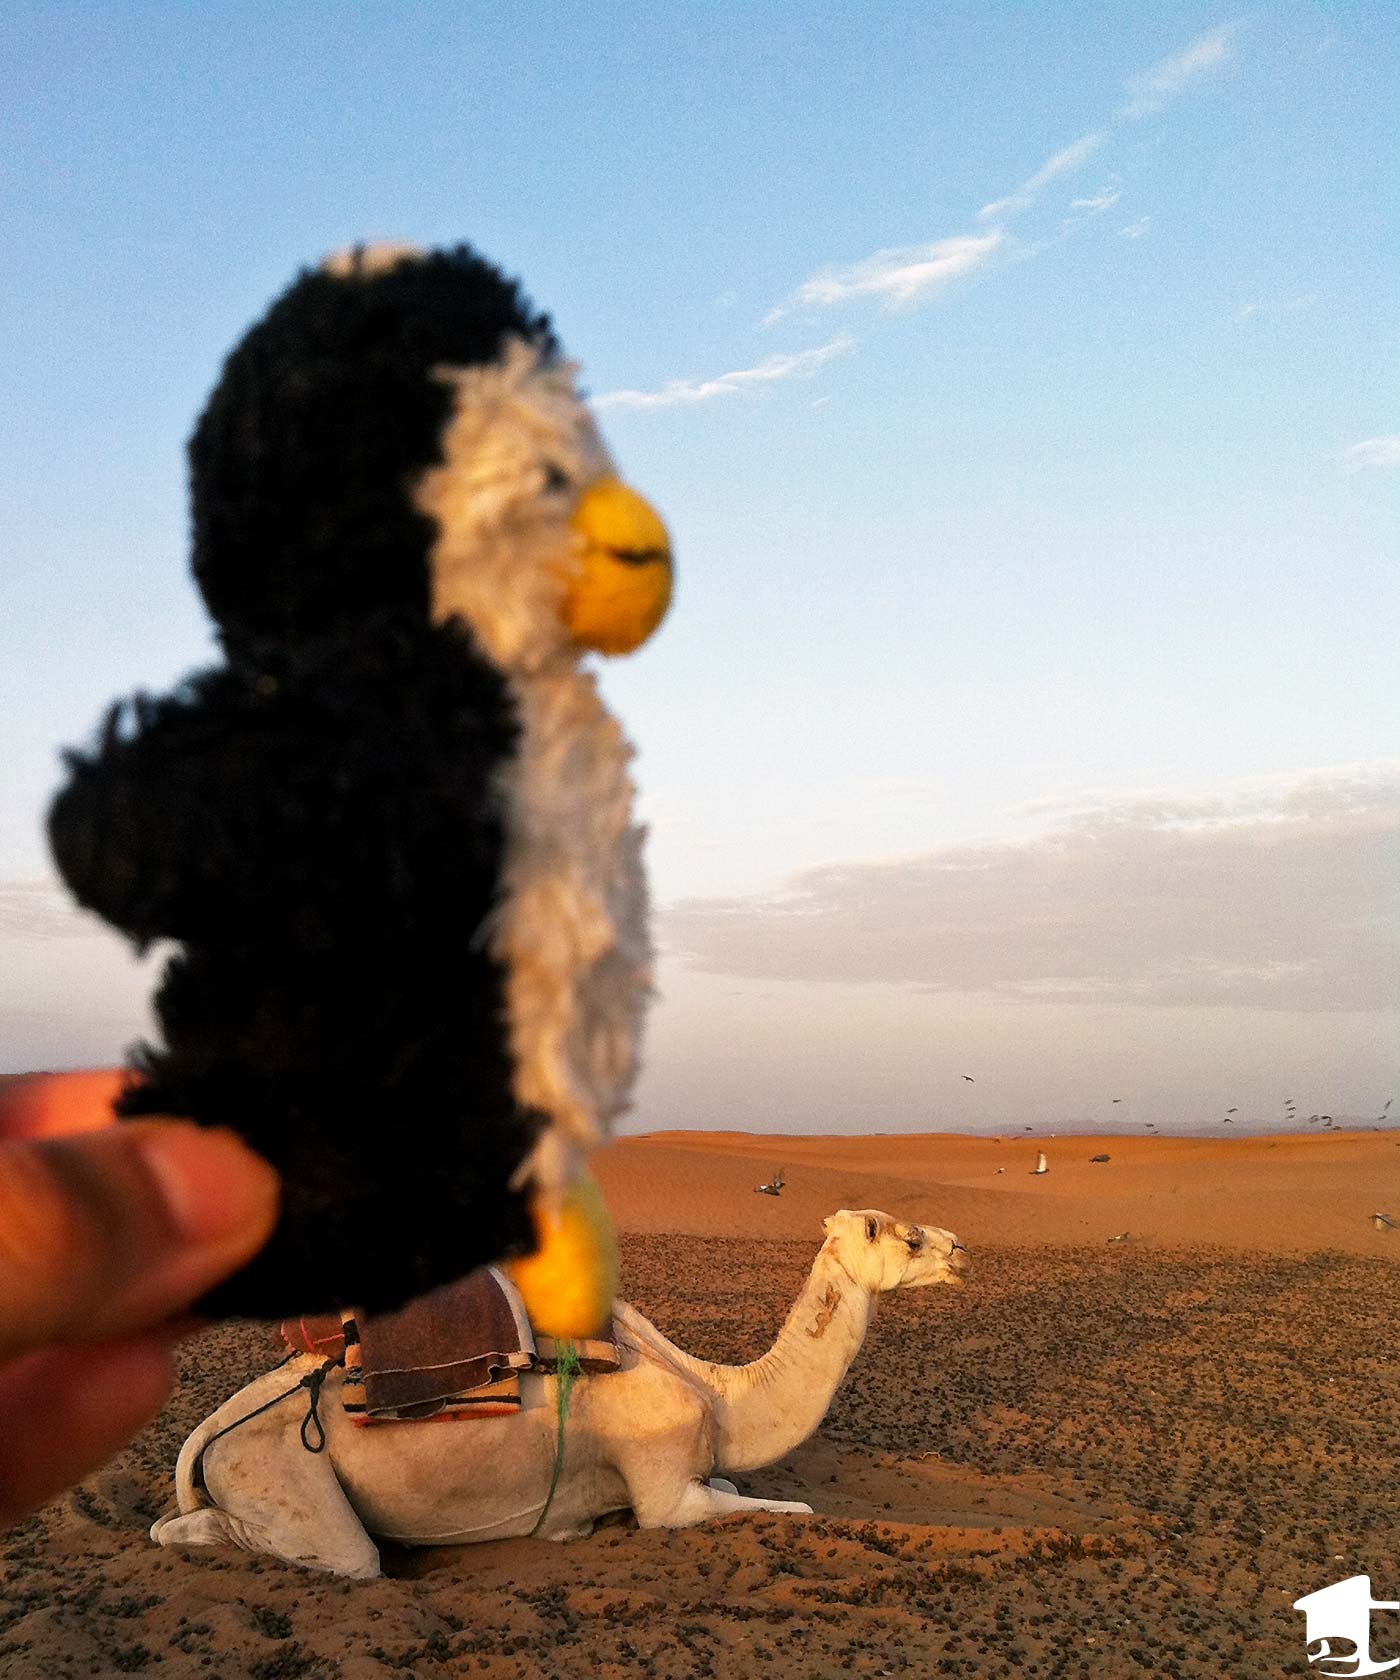 Tiny on a Camel